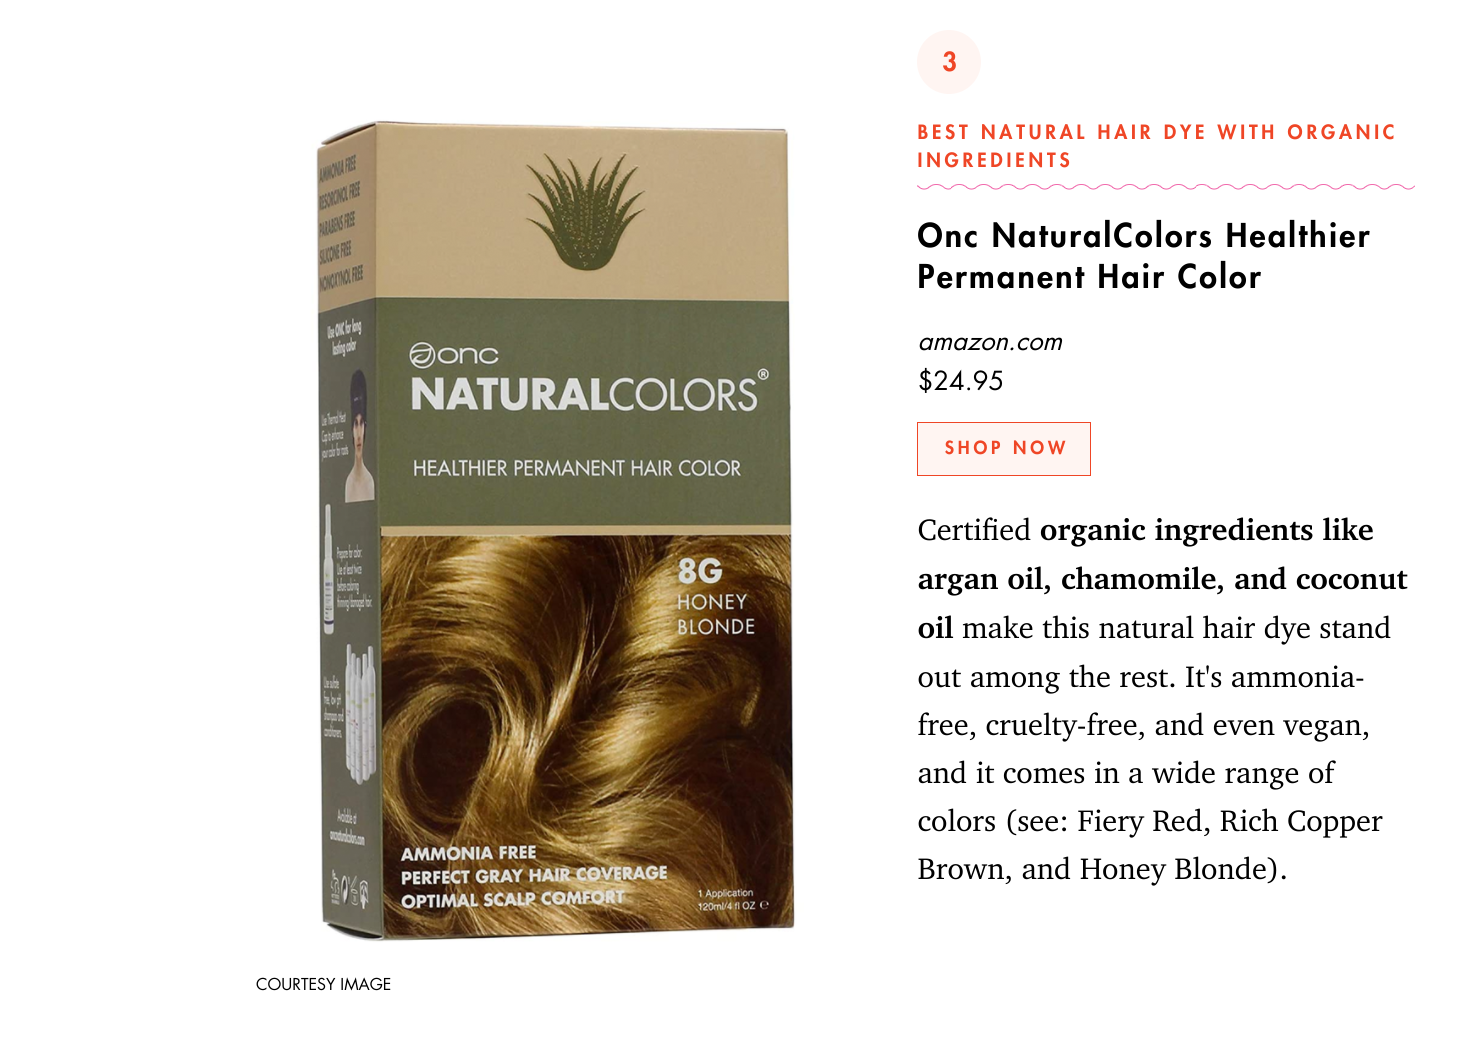 Cosmopolitan Magazine ONC NaturalColors Healthier Permanent Hair Color description feat. 8G Honey Blonde